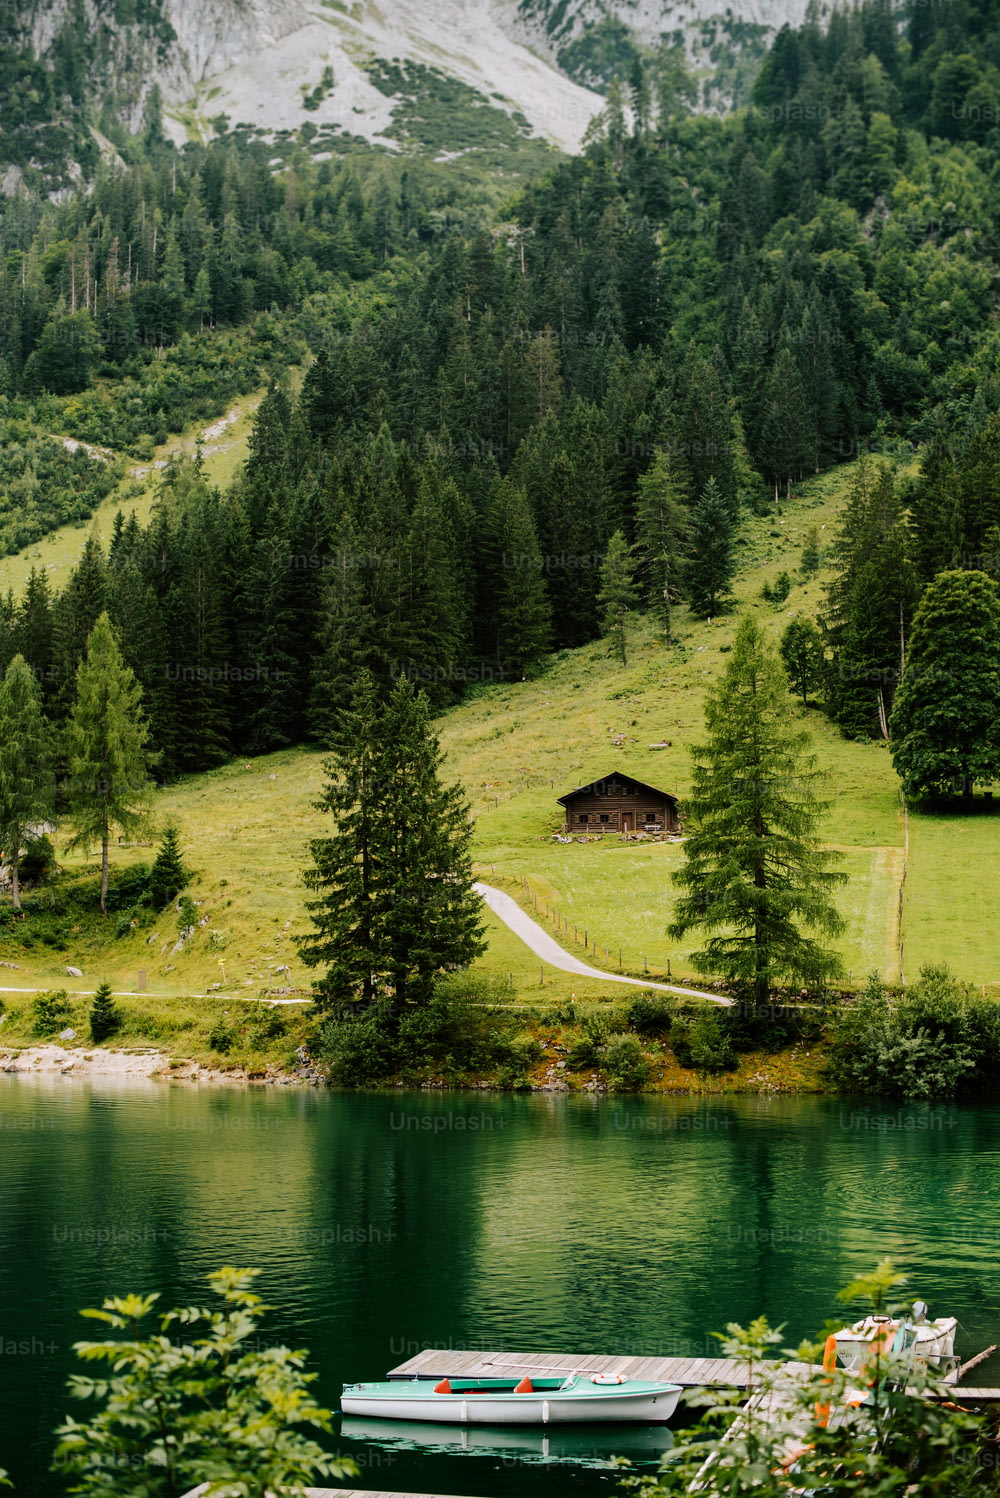 무성한 녹색 언덕 ��옆 호수 꼭대기에 앉아있는 보트